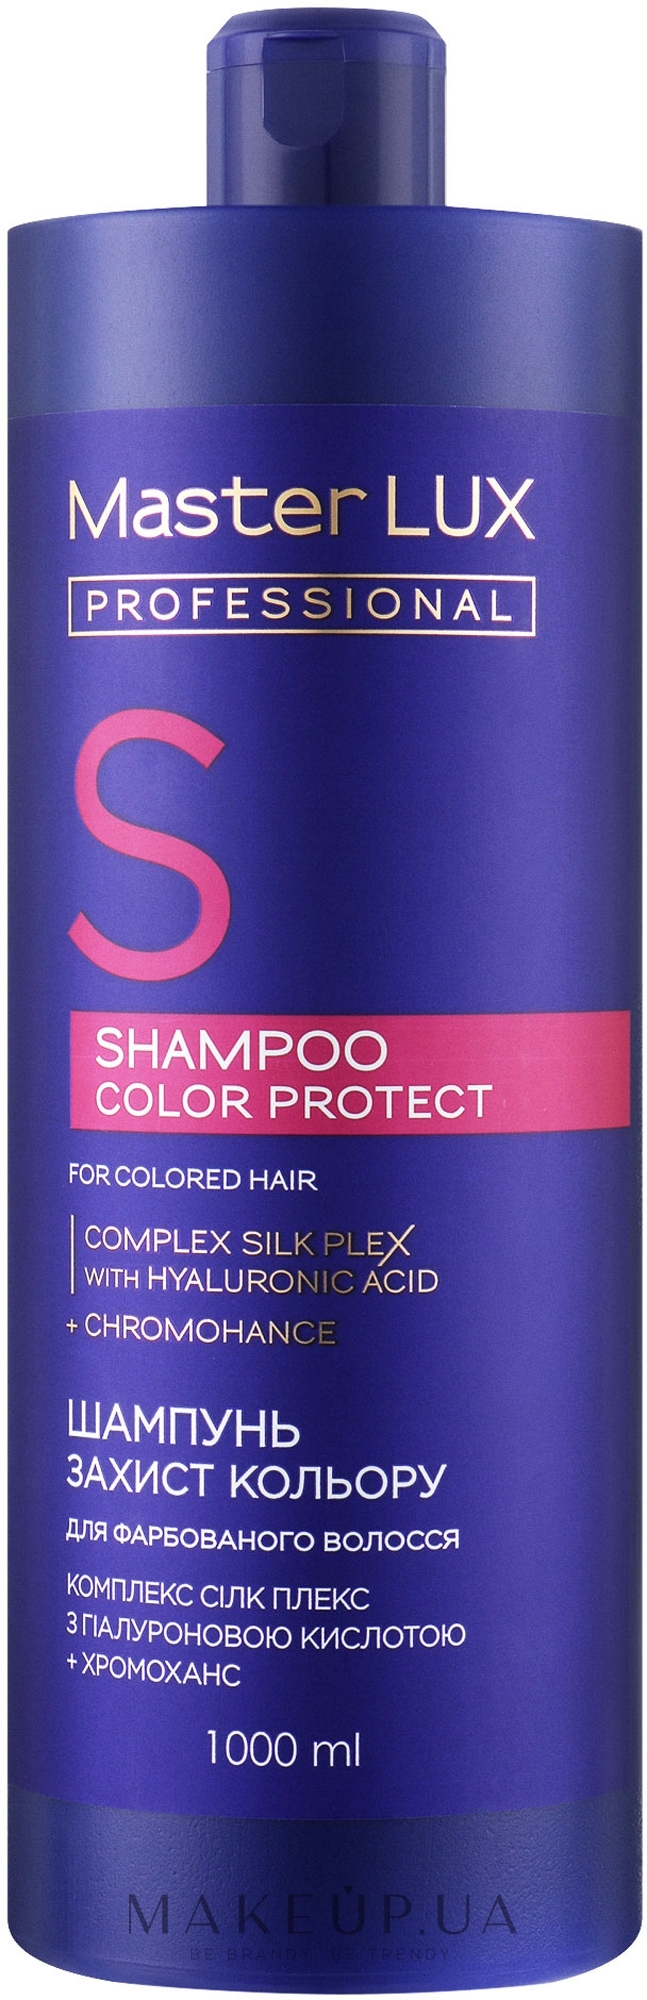 Шампунь для окрашенных волос "Защита цвета" - Master LUX Professional Color Protect Shampoo — фото 1000ml